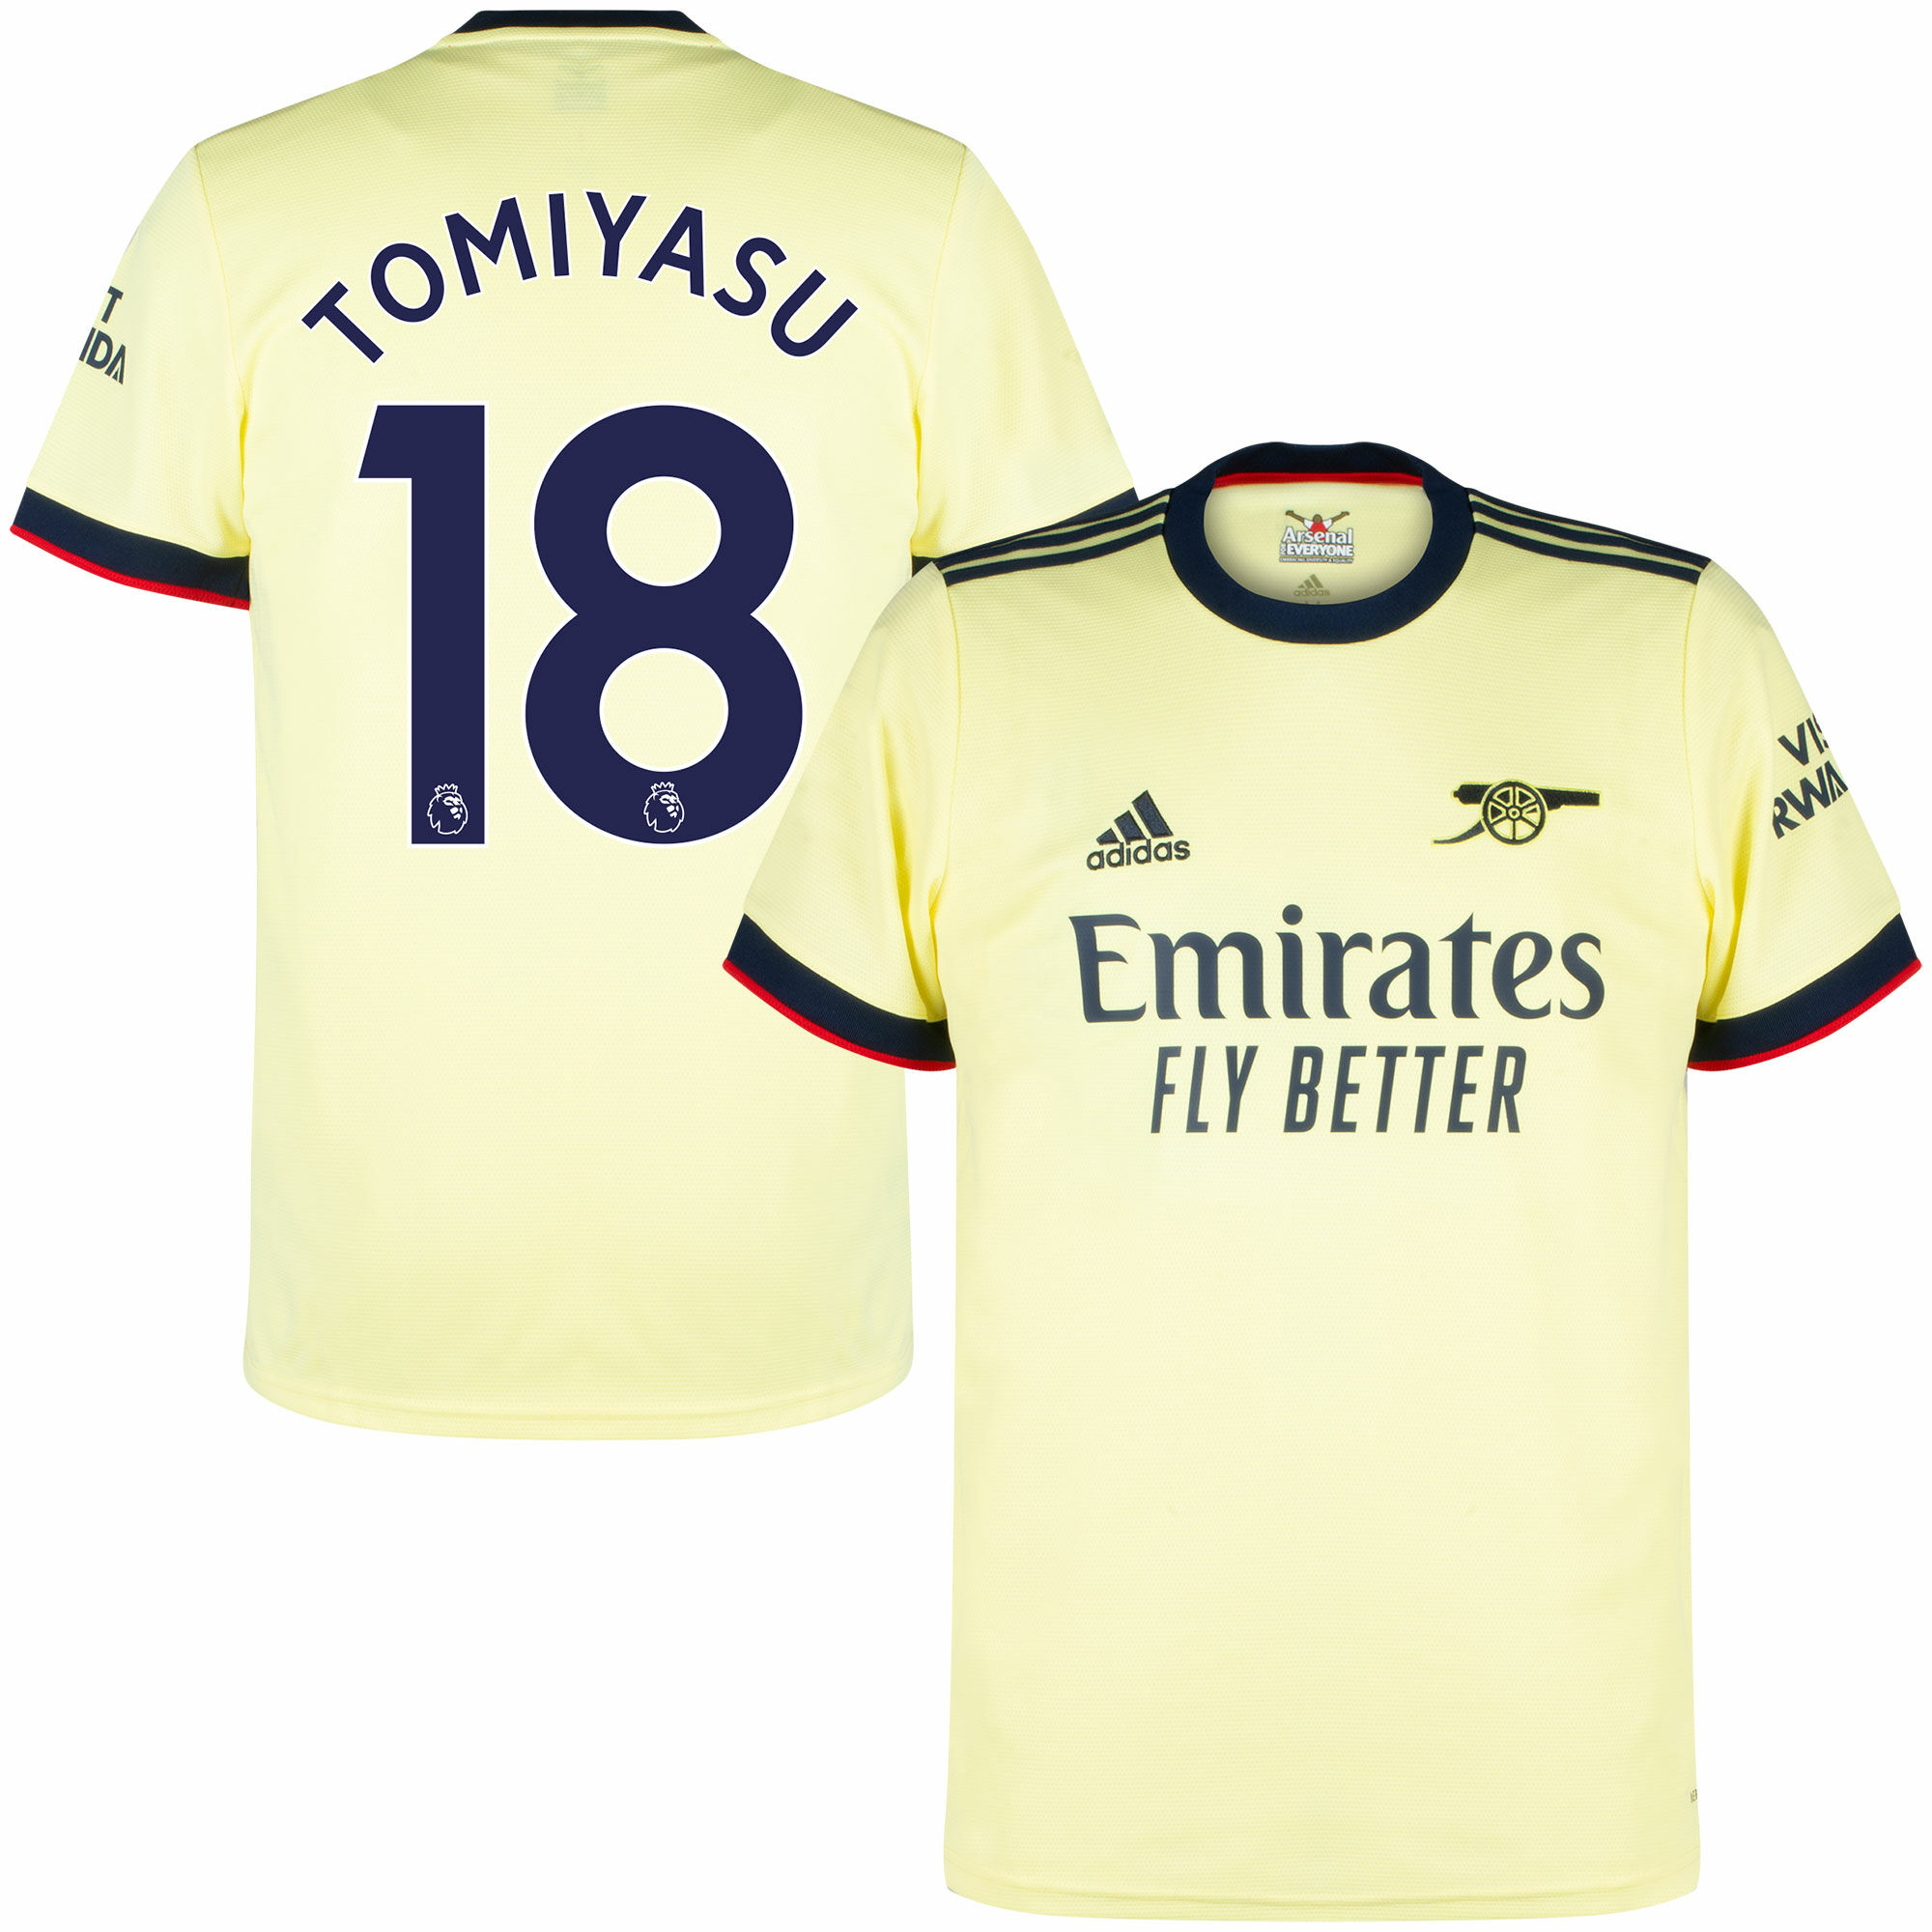 Arsenal - Dres fotbalový - sezóna 2021/22, číslo 18, žlutý, Takehiro Tomijasu, venkovní